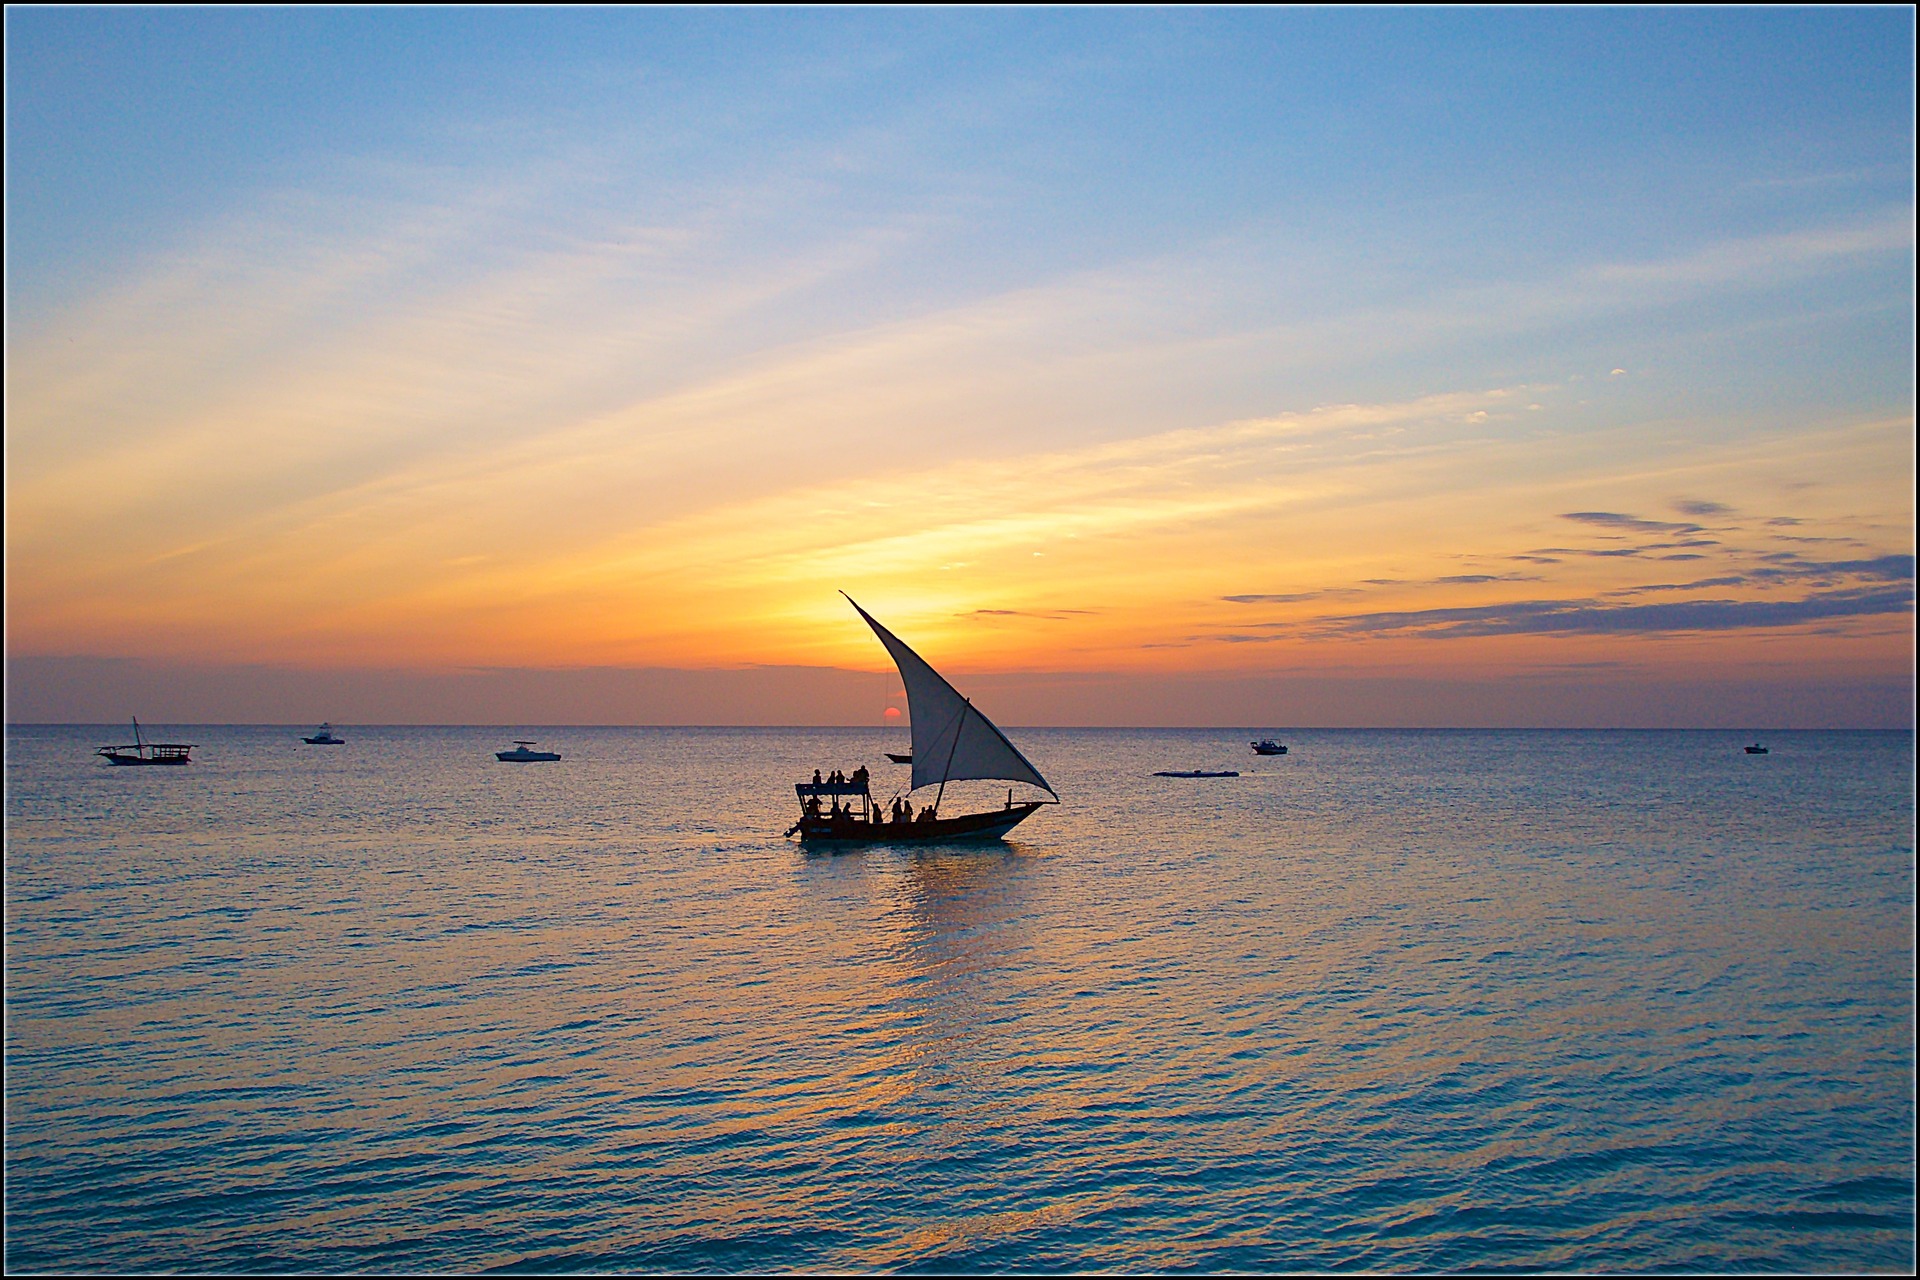 10 idées de voyages de noces dans des îles hors du commun - Blog Mariage Madame C